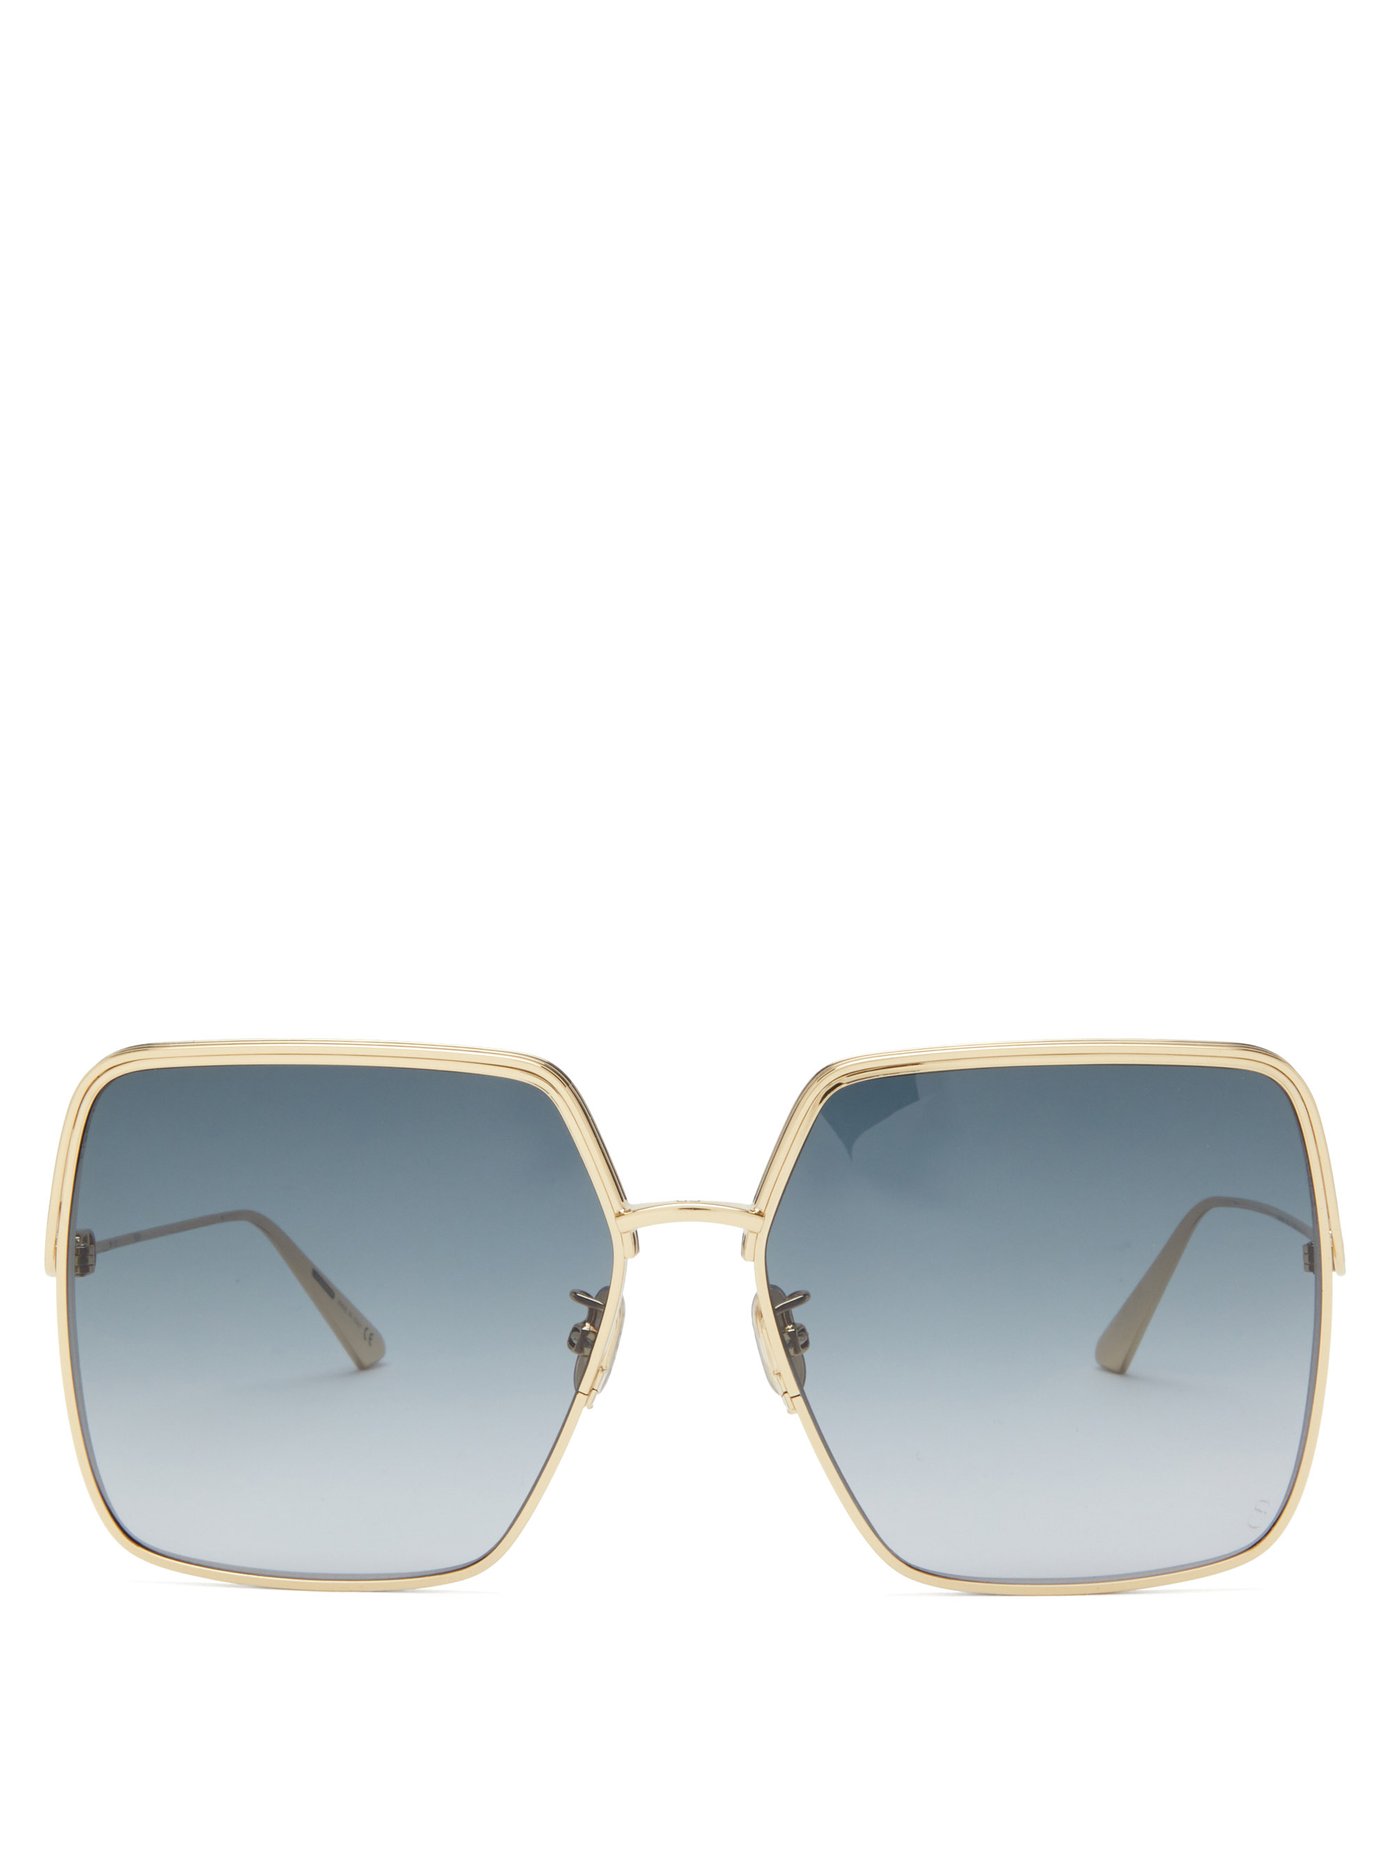 EverDior round metal sunglasses | DIOR 